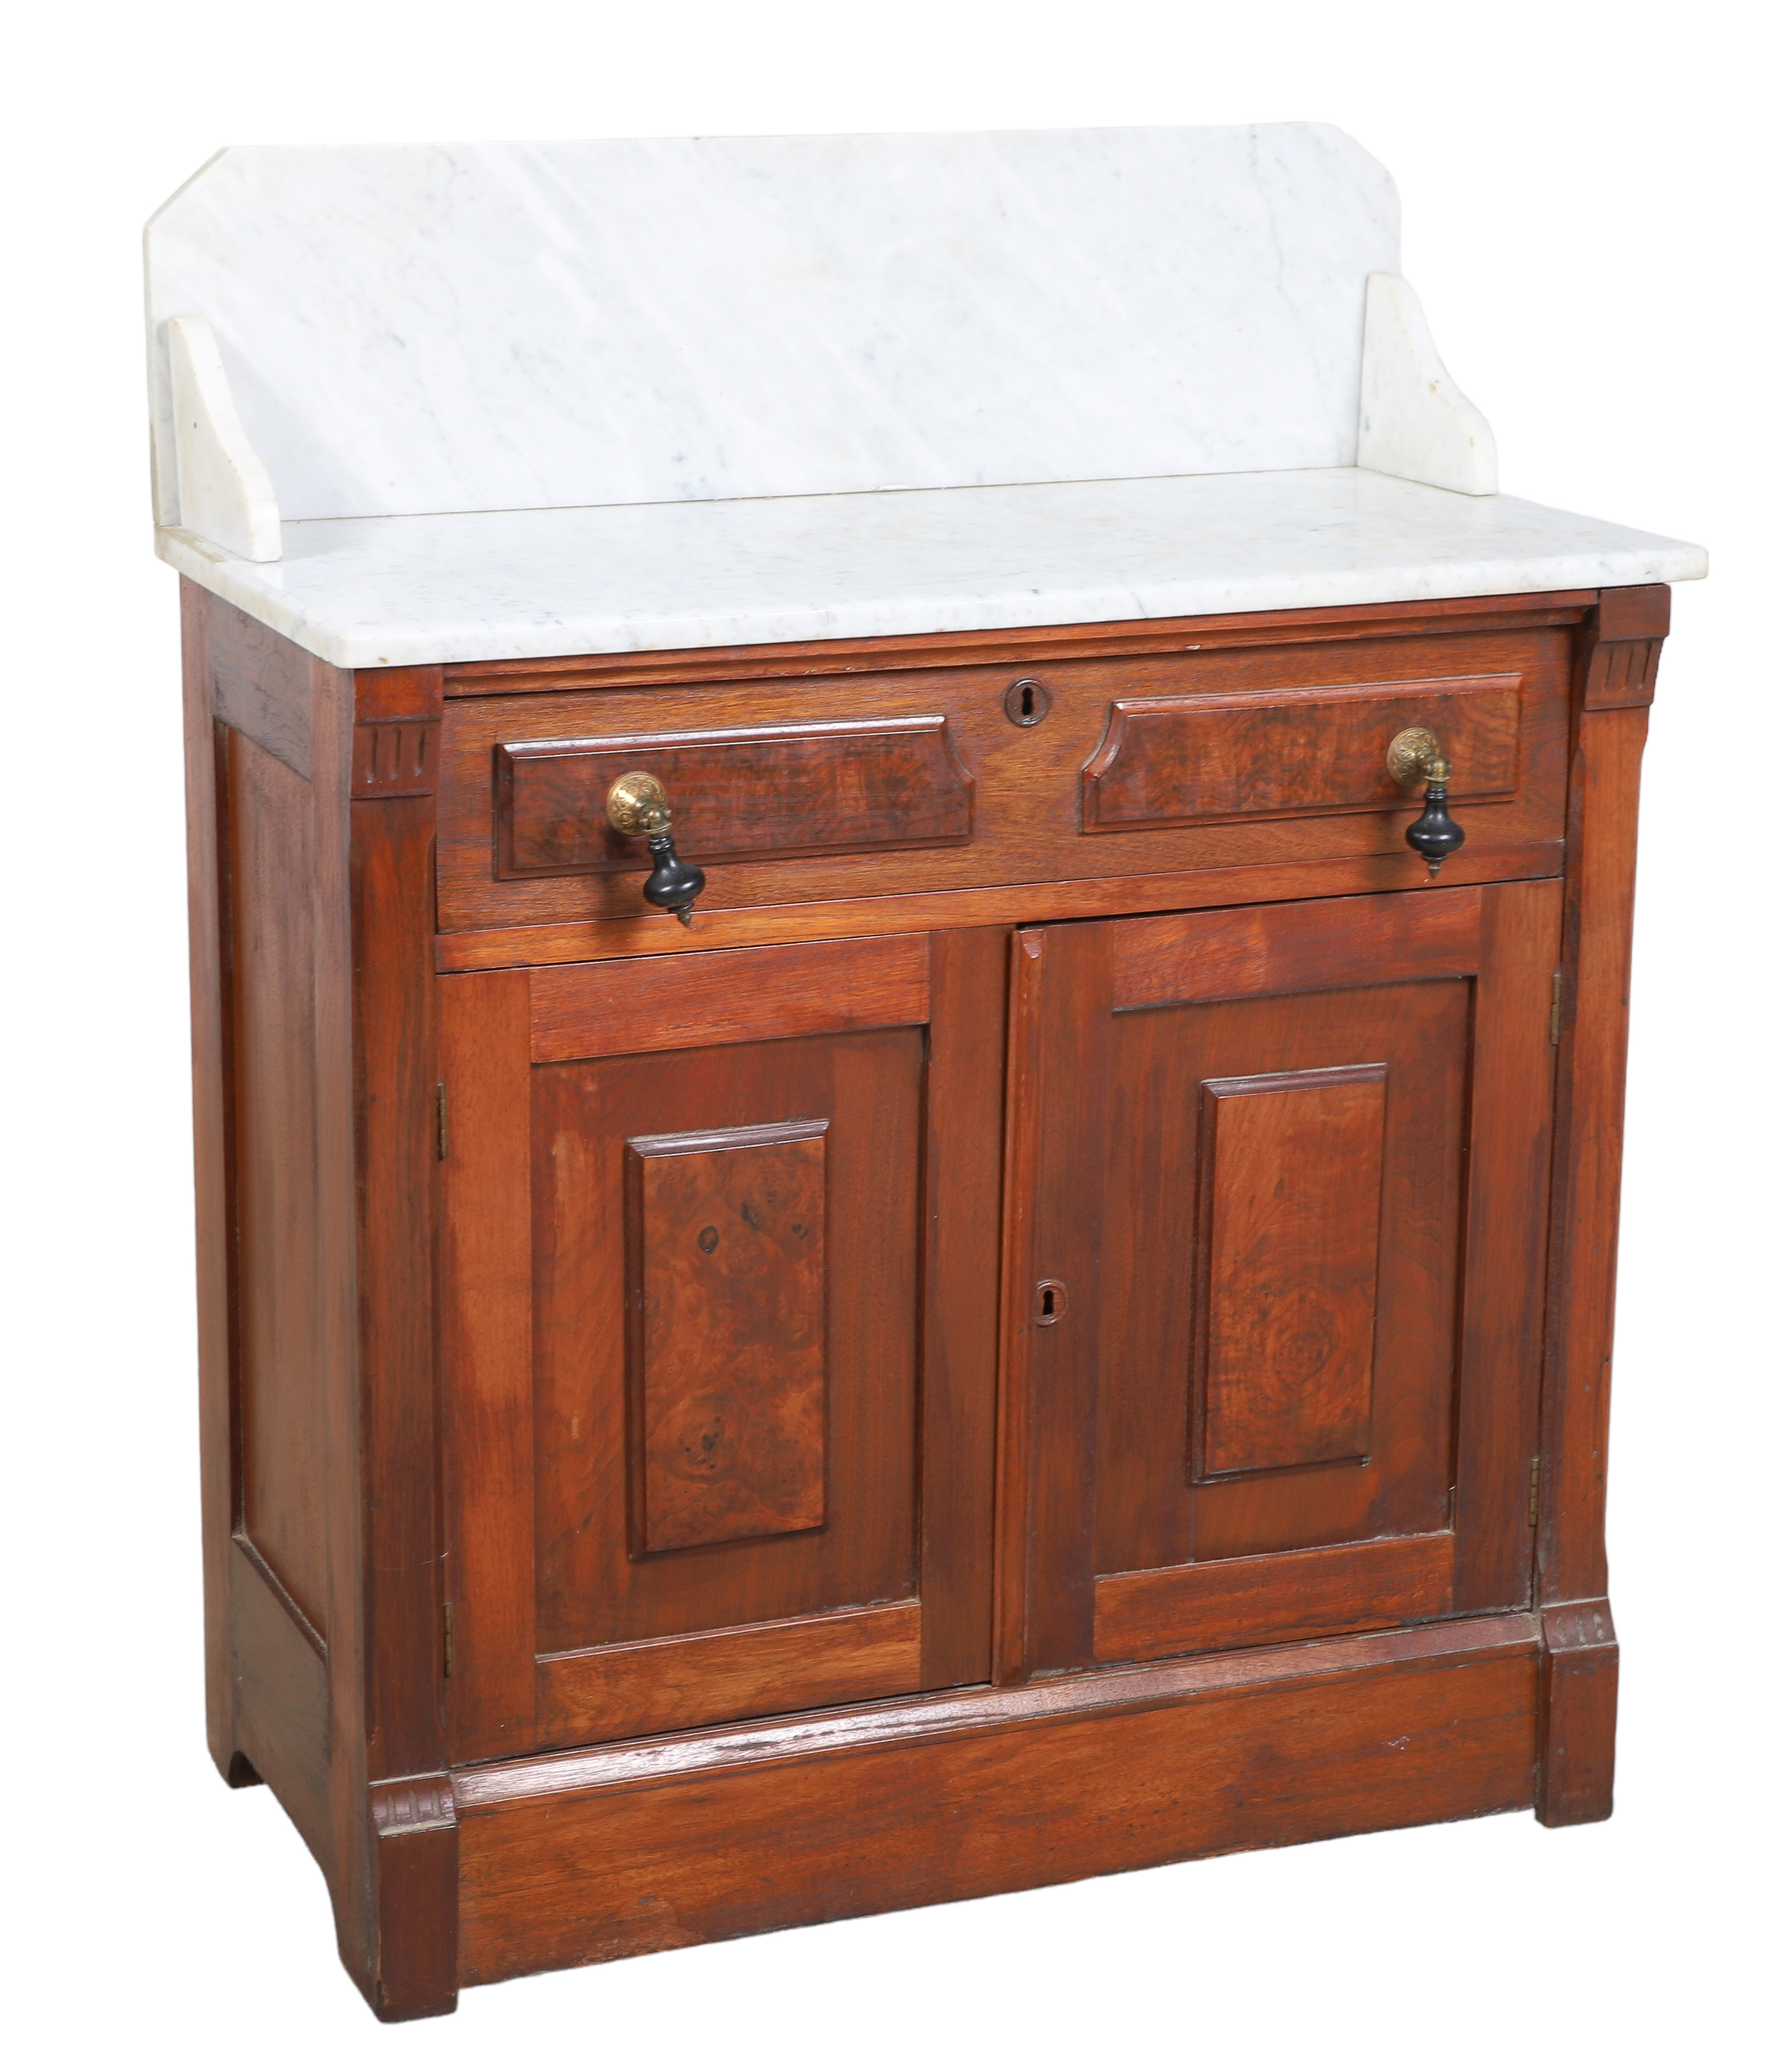 Victorian marbletop washstand,